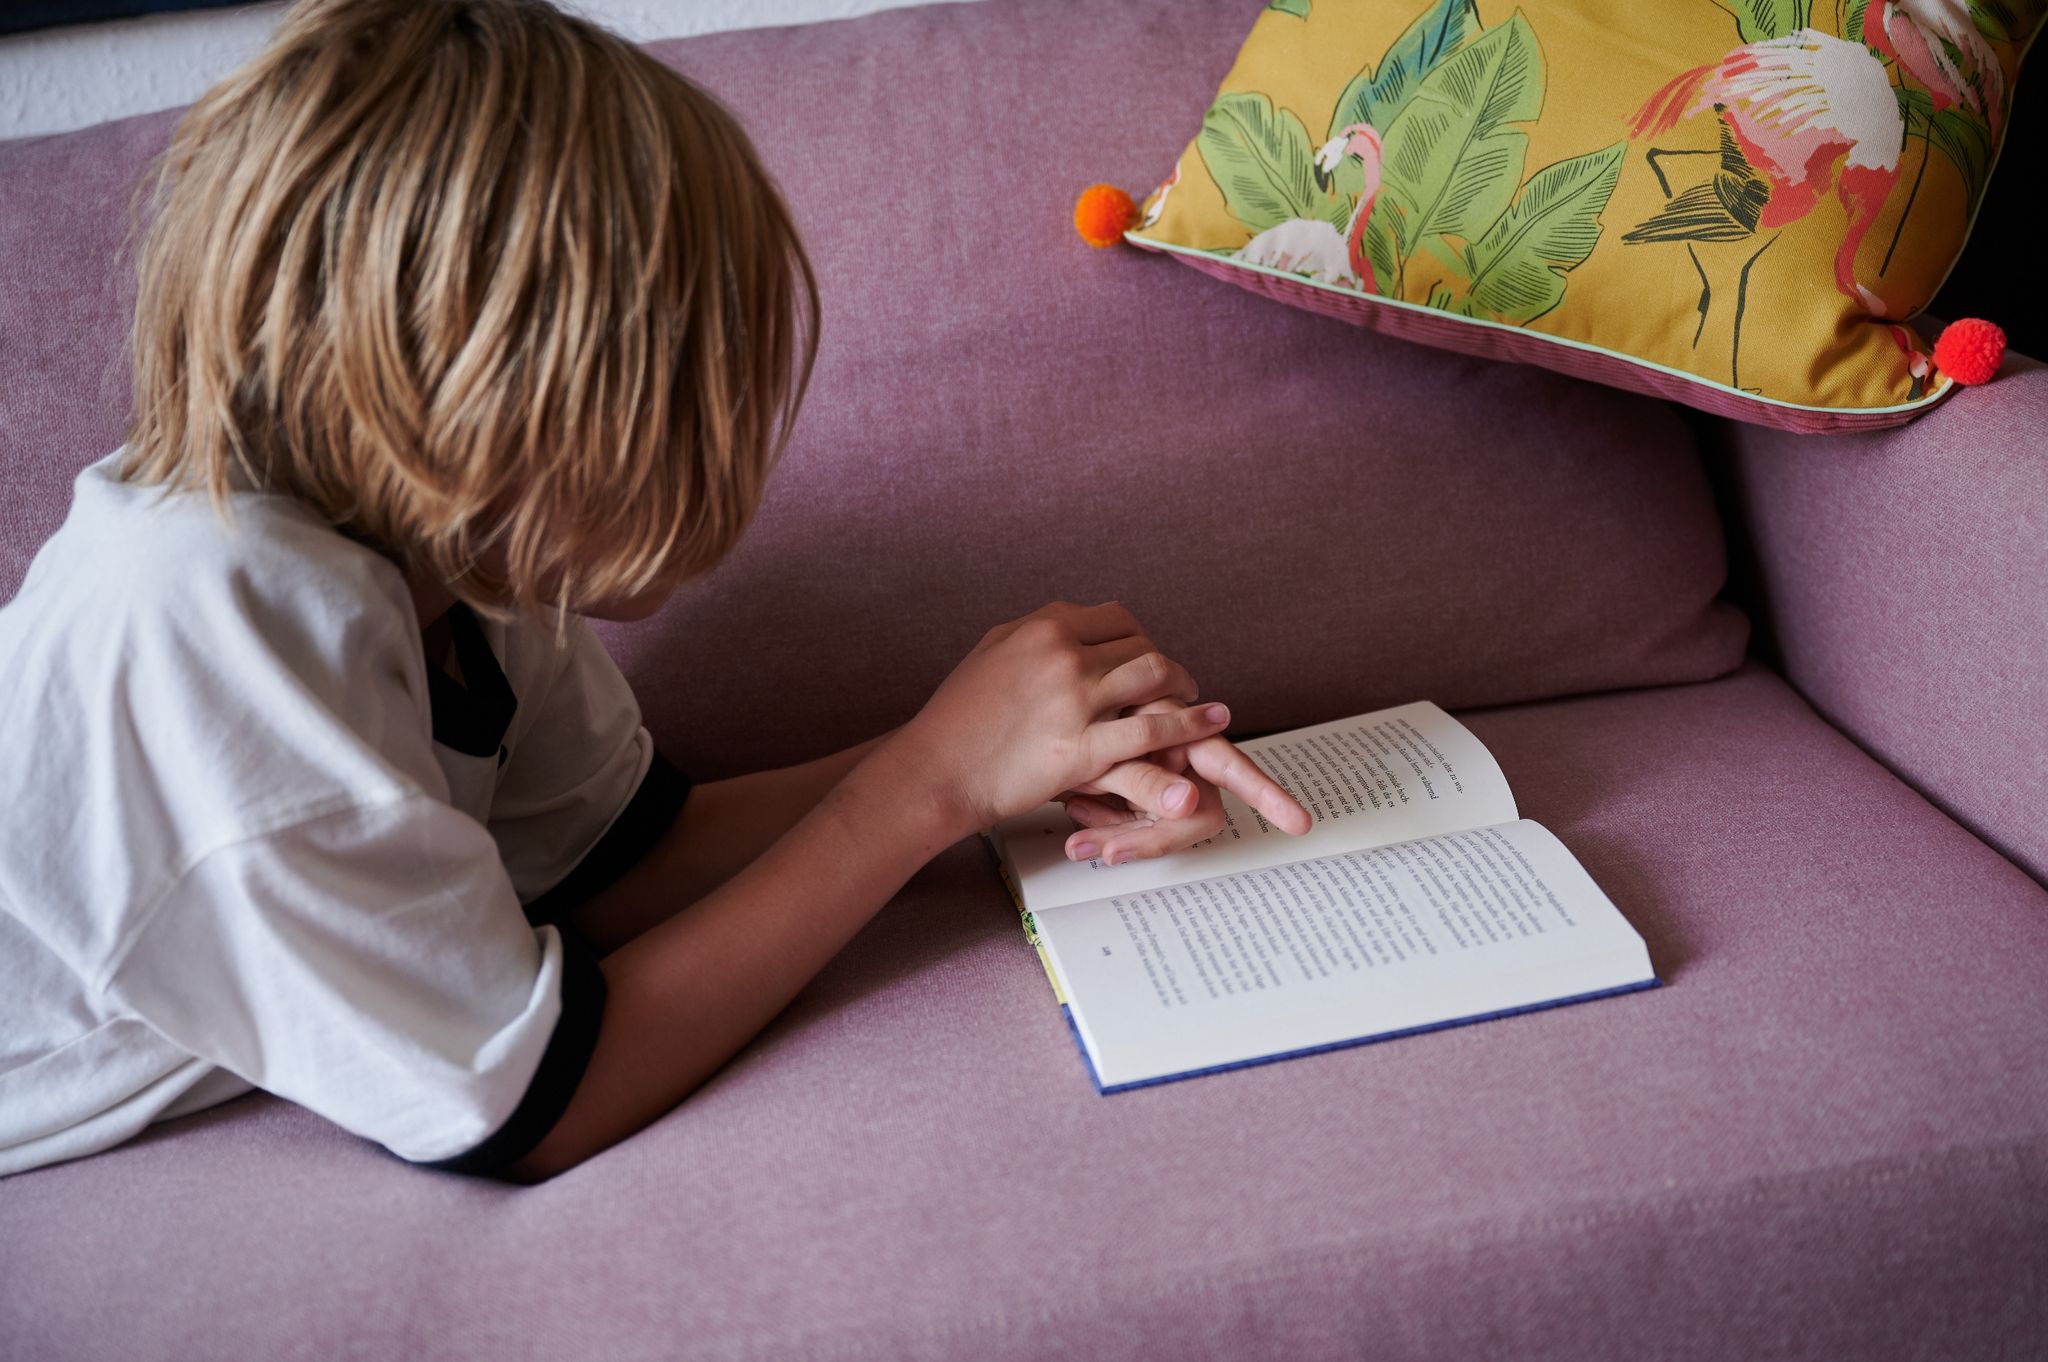 Kinder mit einer Lesestörung investieren viel Energie, um Wörter zu erfassen. Oft reicht die Kraft dann nicht mehr aus, den Sinn des Textes auch zu verstehen.